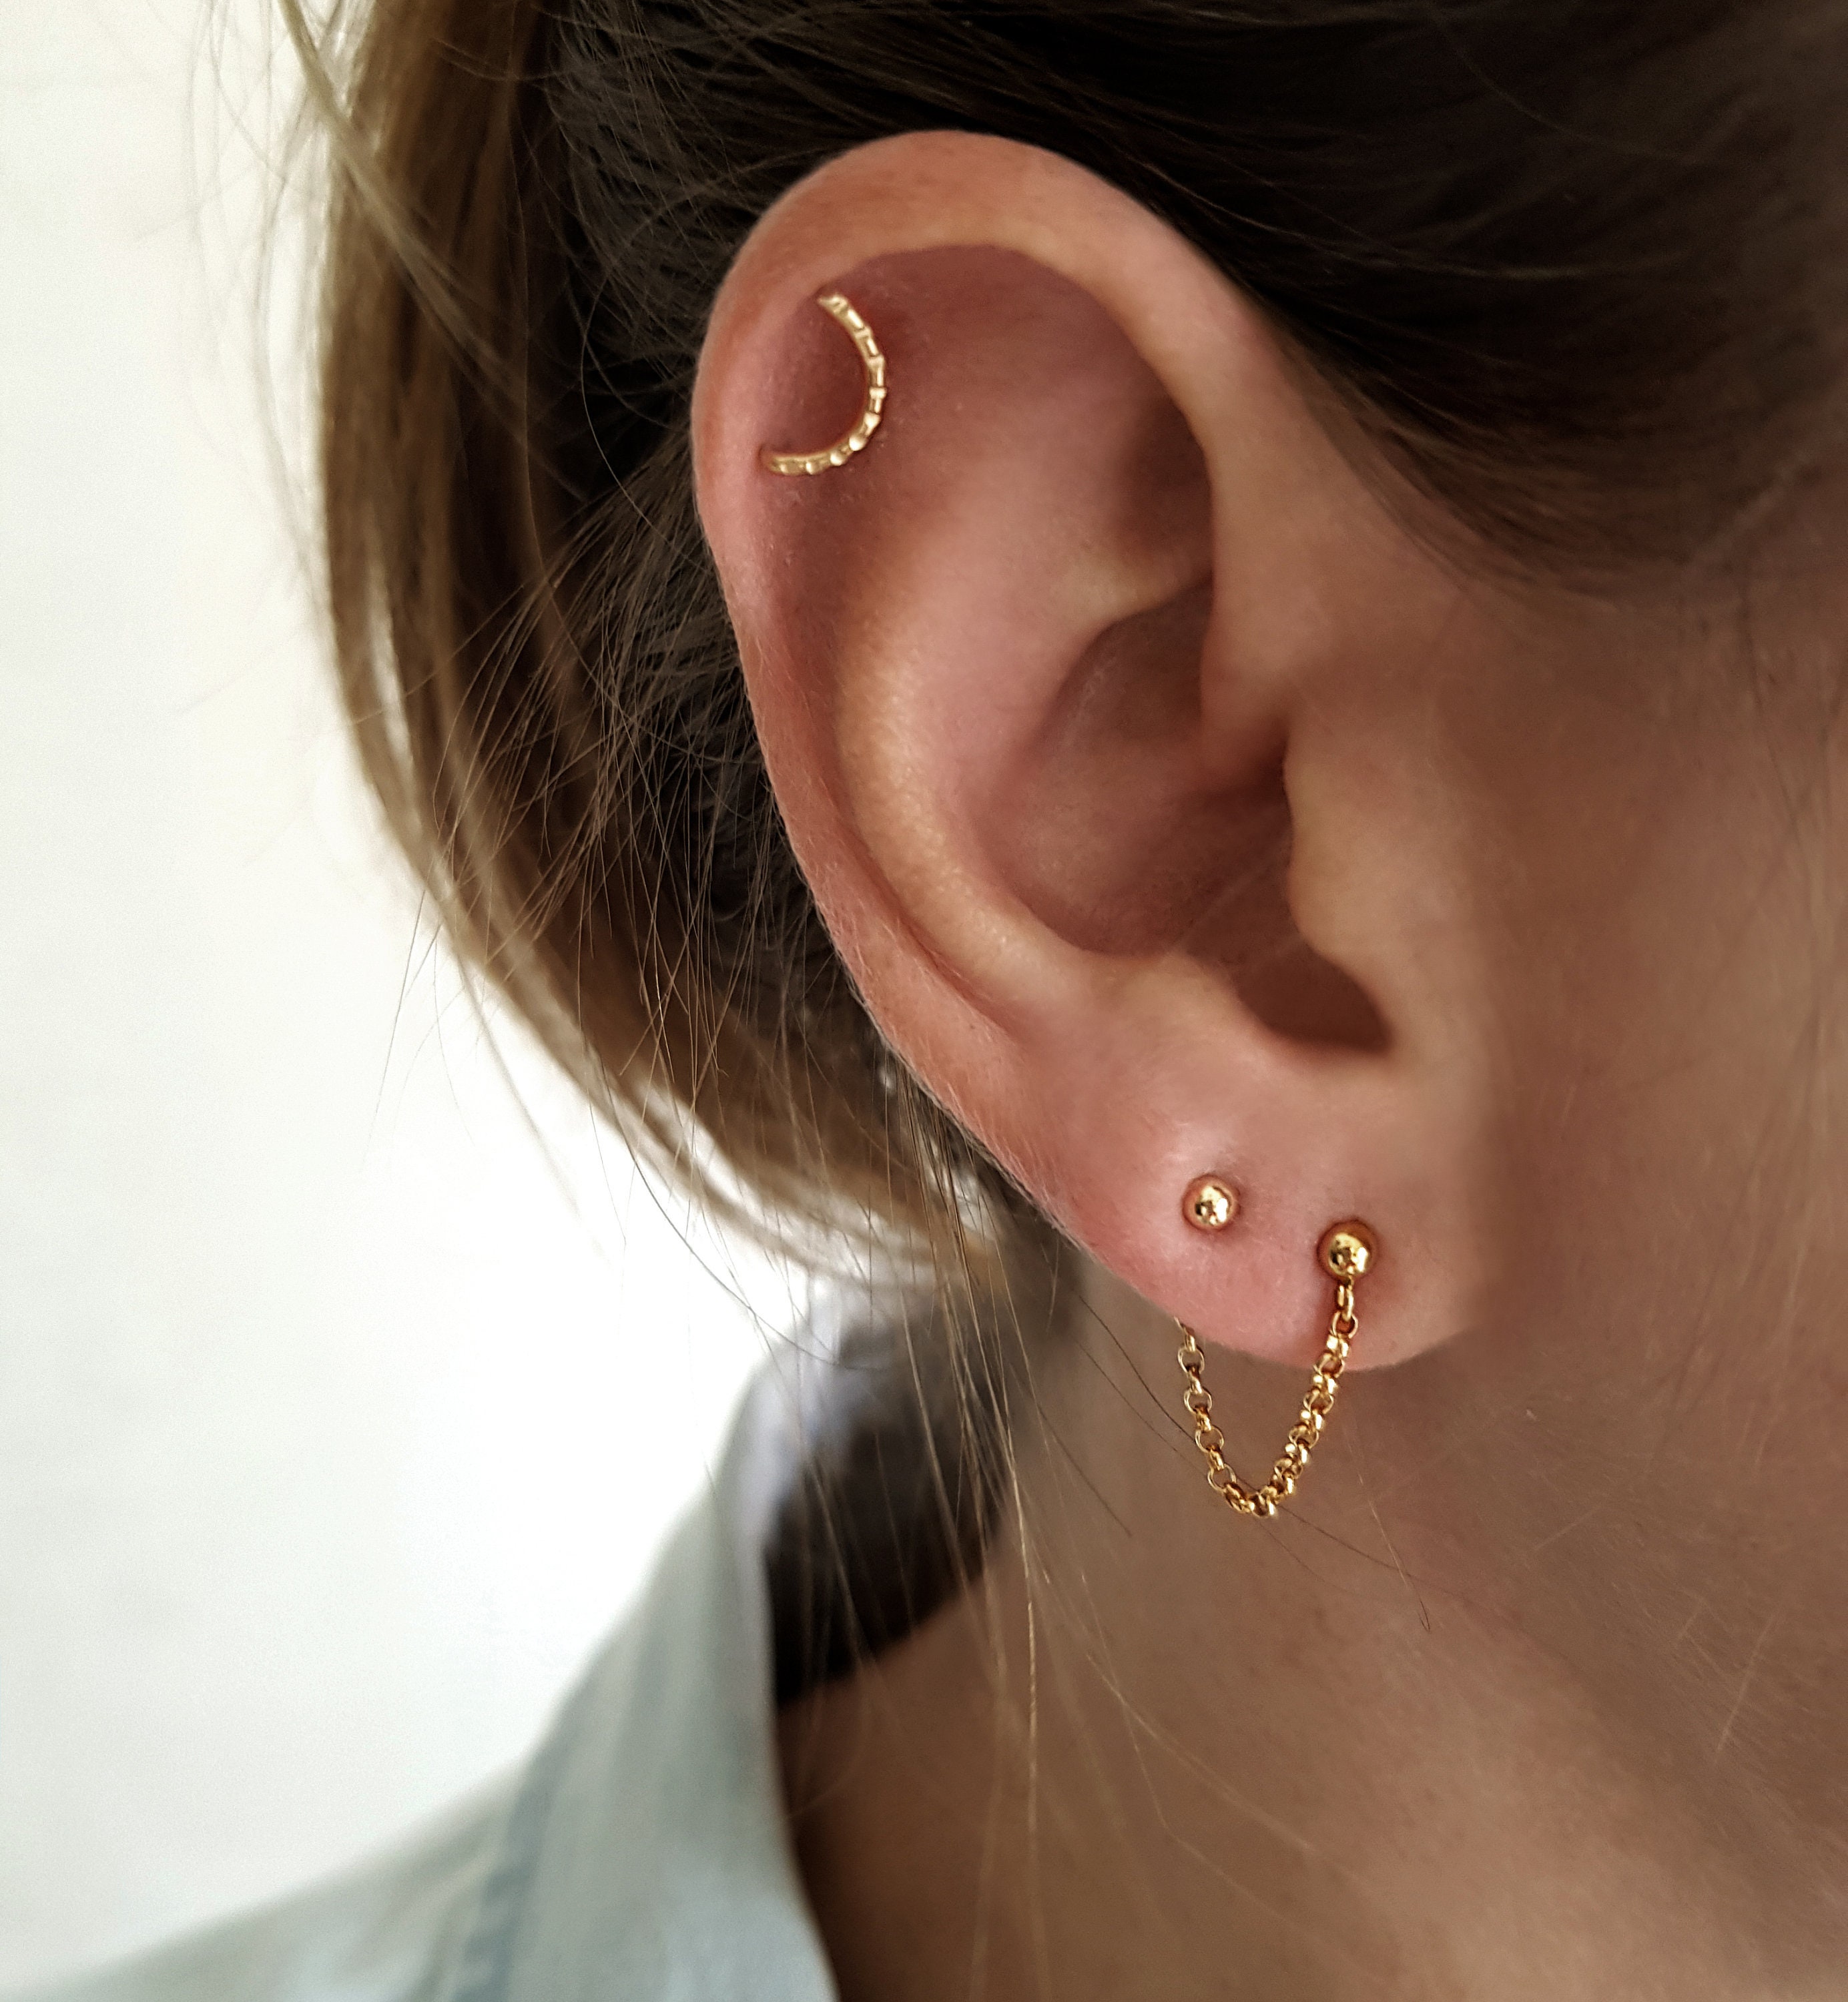 14Kt Gold Earring Chain Earring 